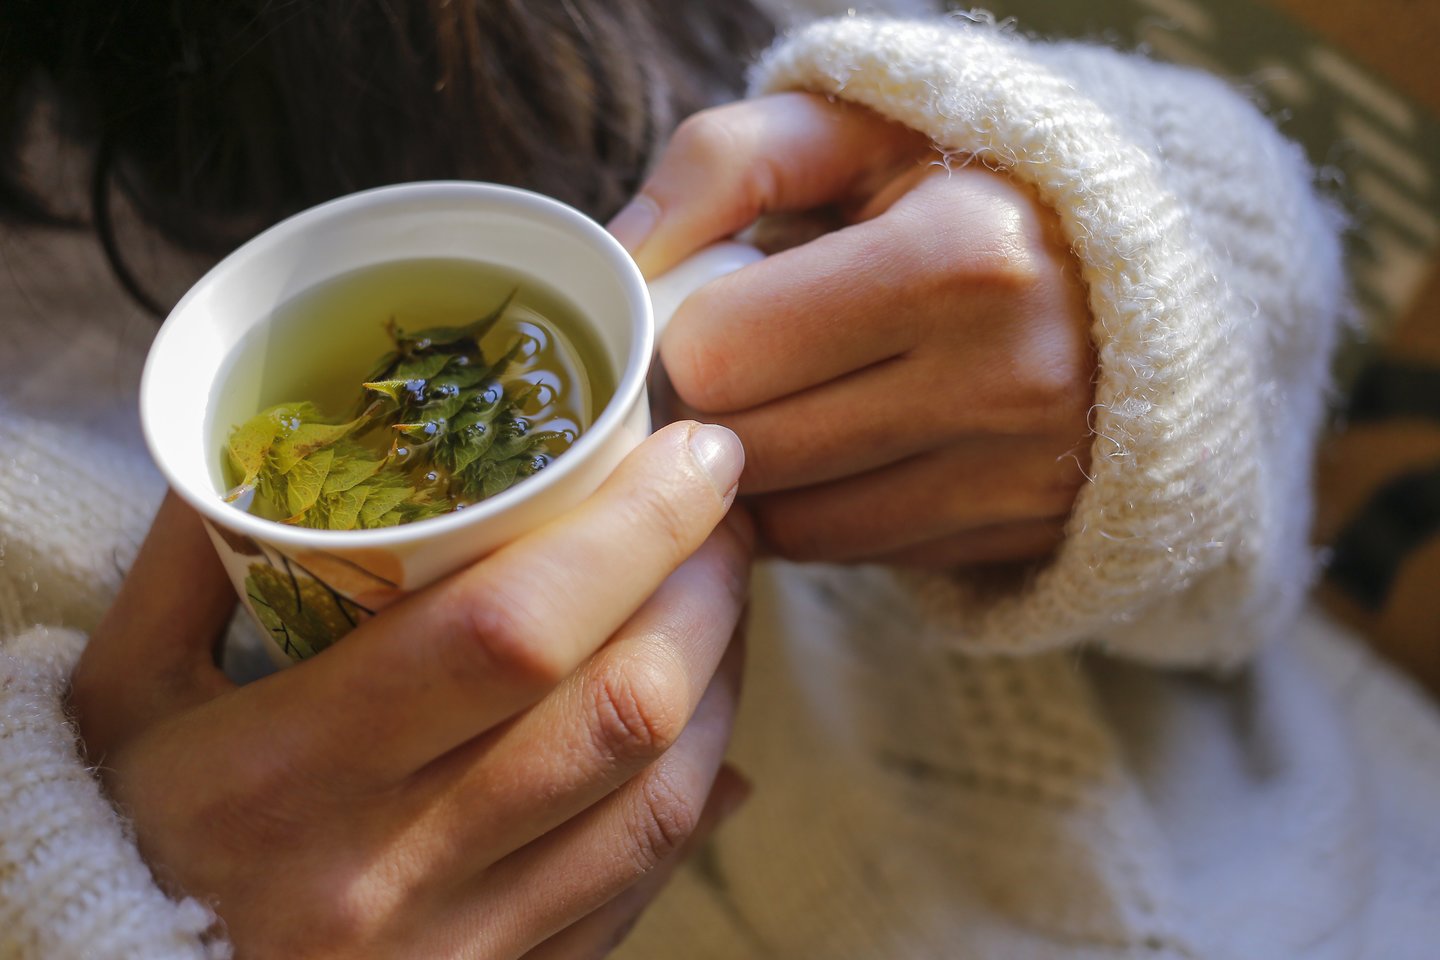  Šaltuoju metu populiarios tampa vaistažolių arbatos ar įvairūs antpilai.<br> 123rf nuotr.